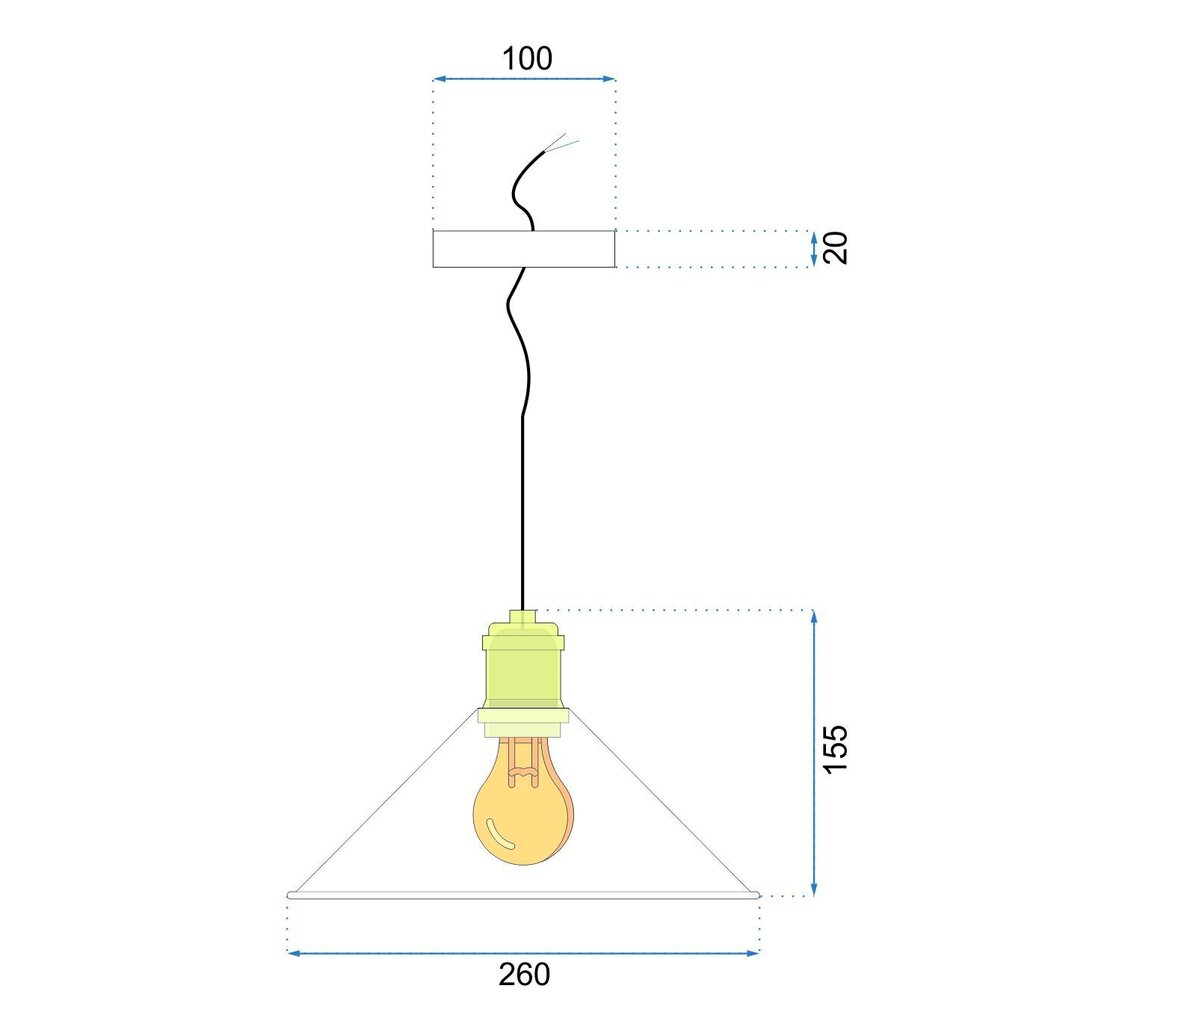 Pakabinamas šviestuvas Porto, Black kaina ir informacija | Pakabinami šviestuvai | pigu.lt